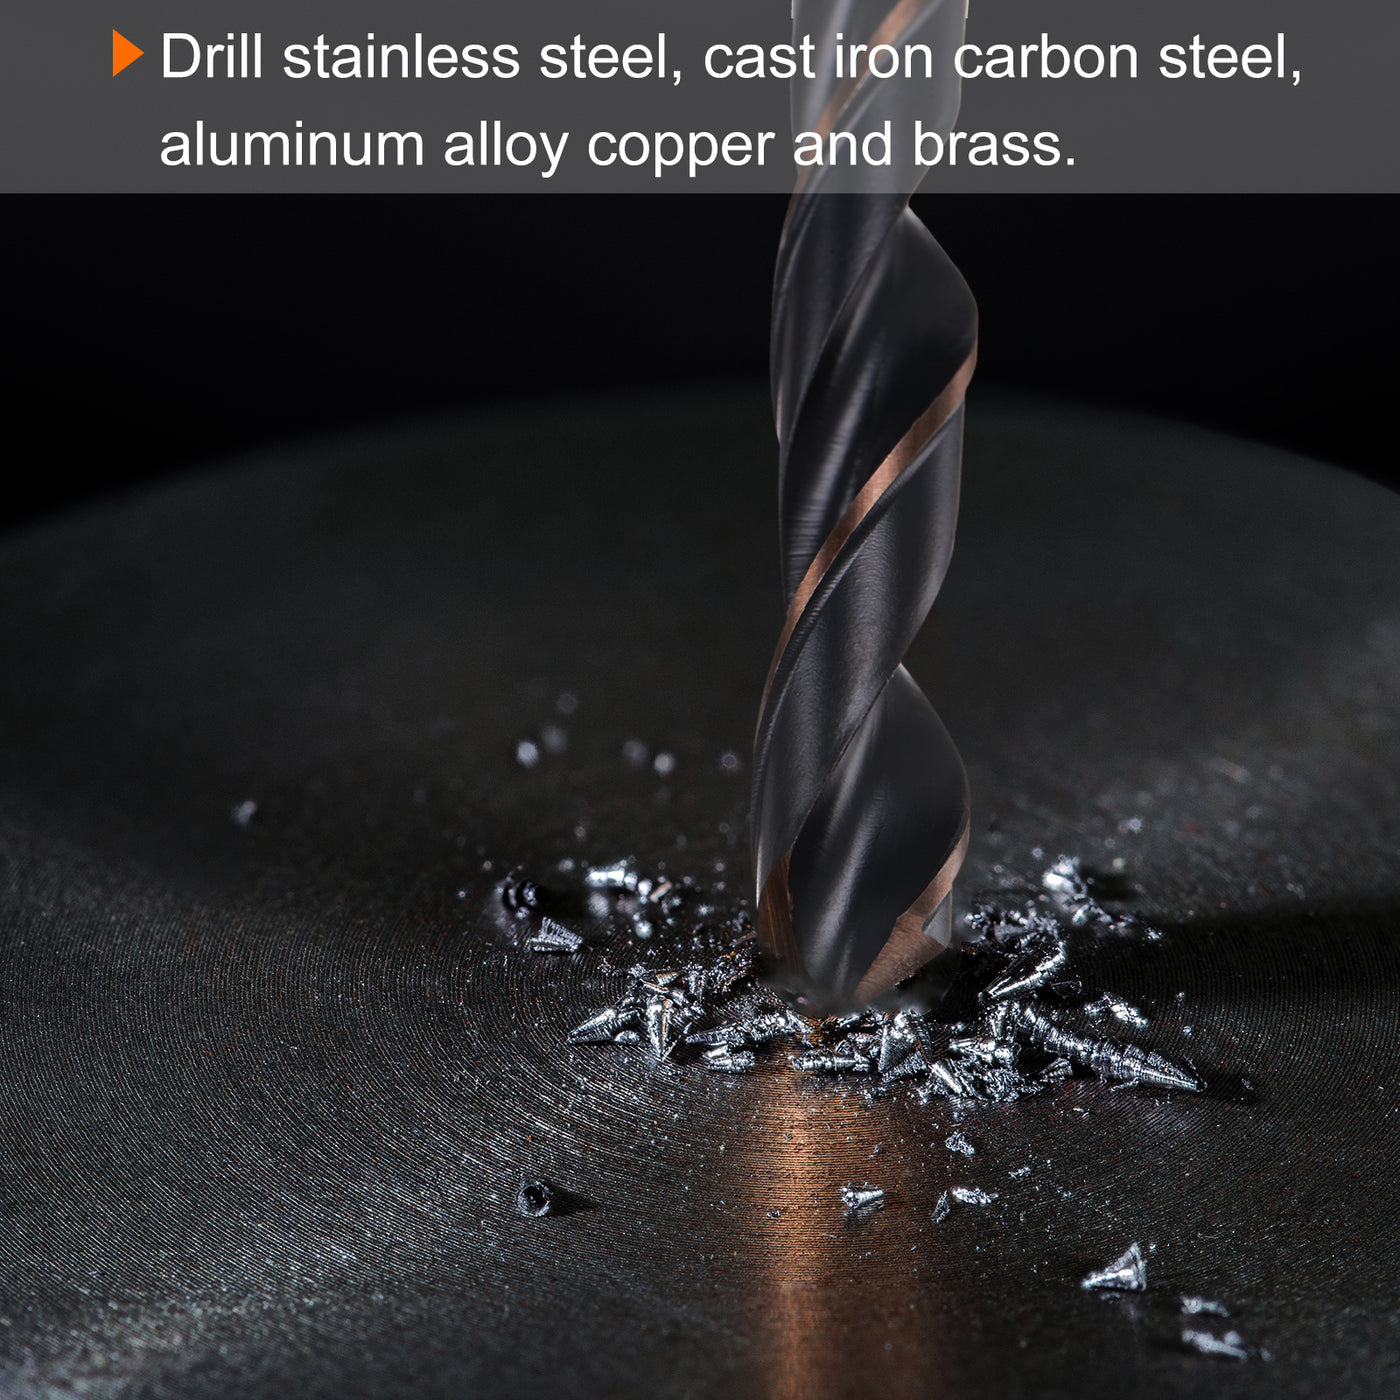 Harfington 5pcs 6.5mm Nitride Titanium Coated High Speed Steel (HSS) 4341 Twist Drill Bits